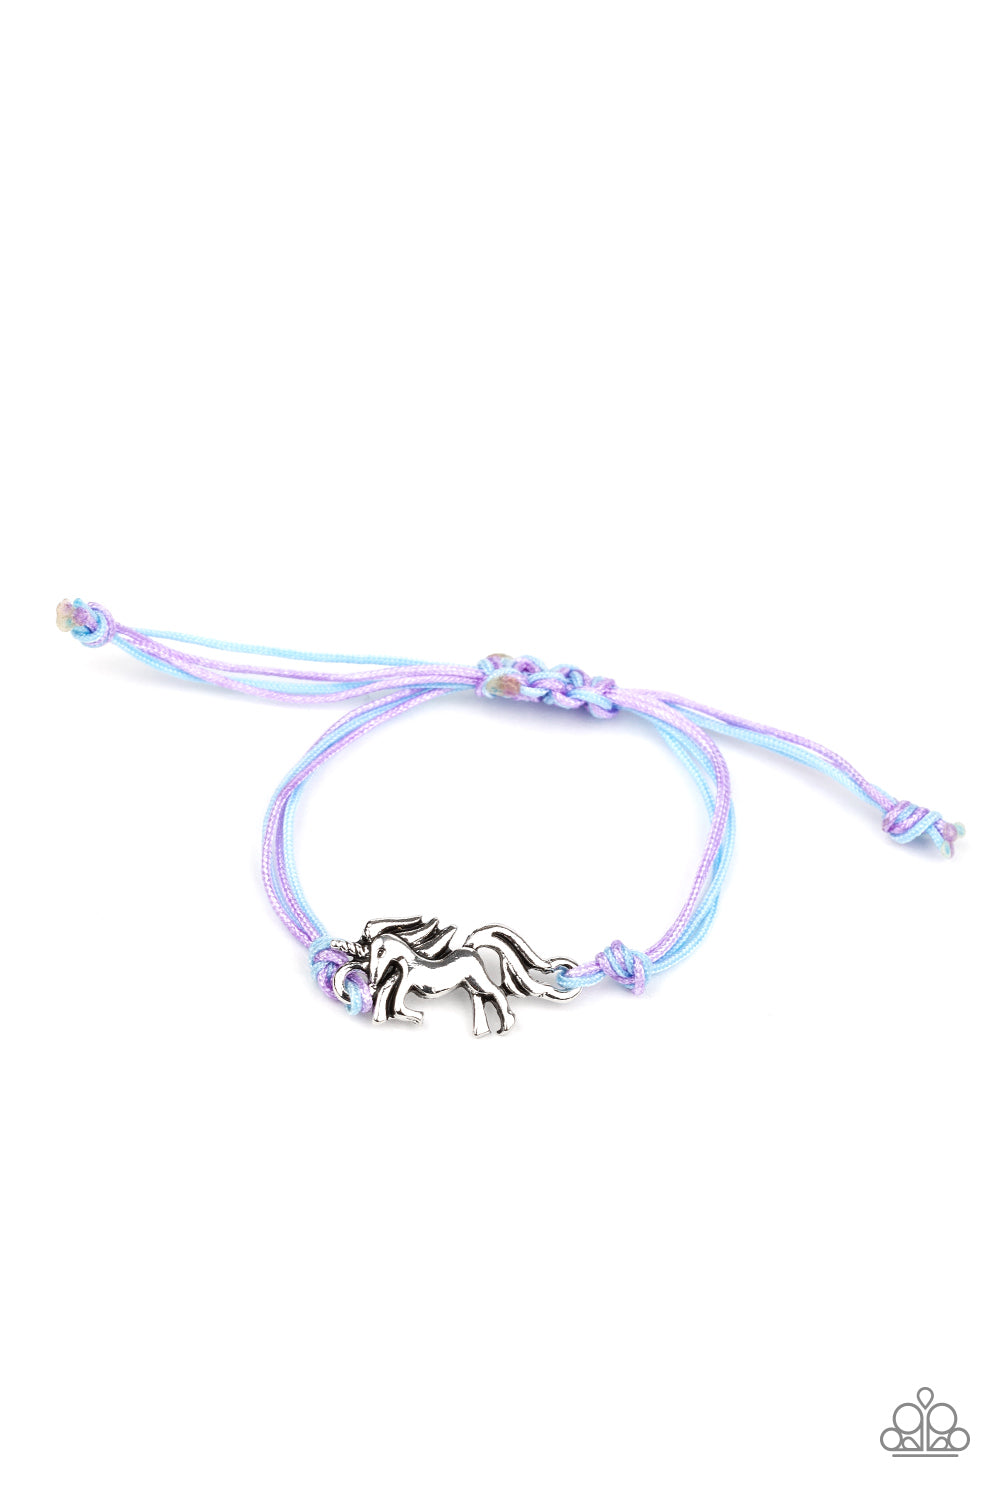 Starlet Shimmer Unicorn Pull String Bracelet